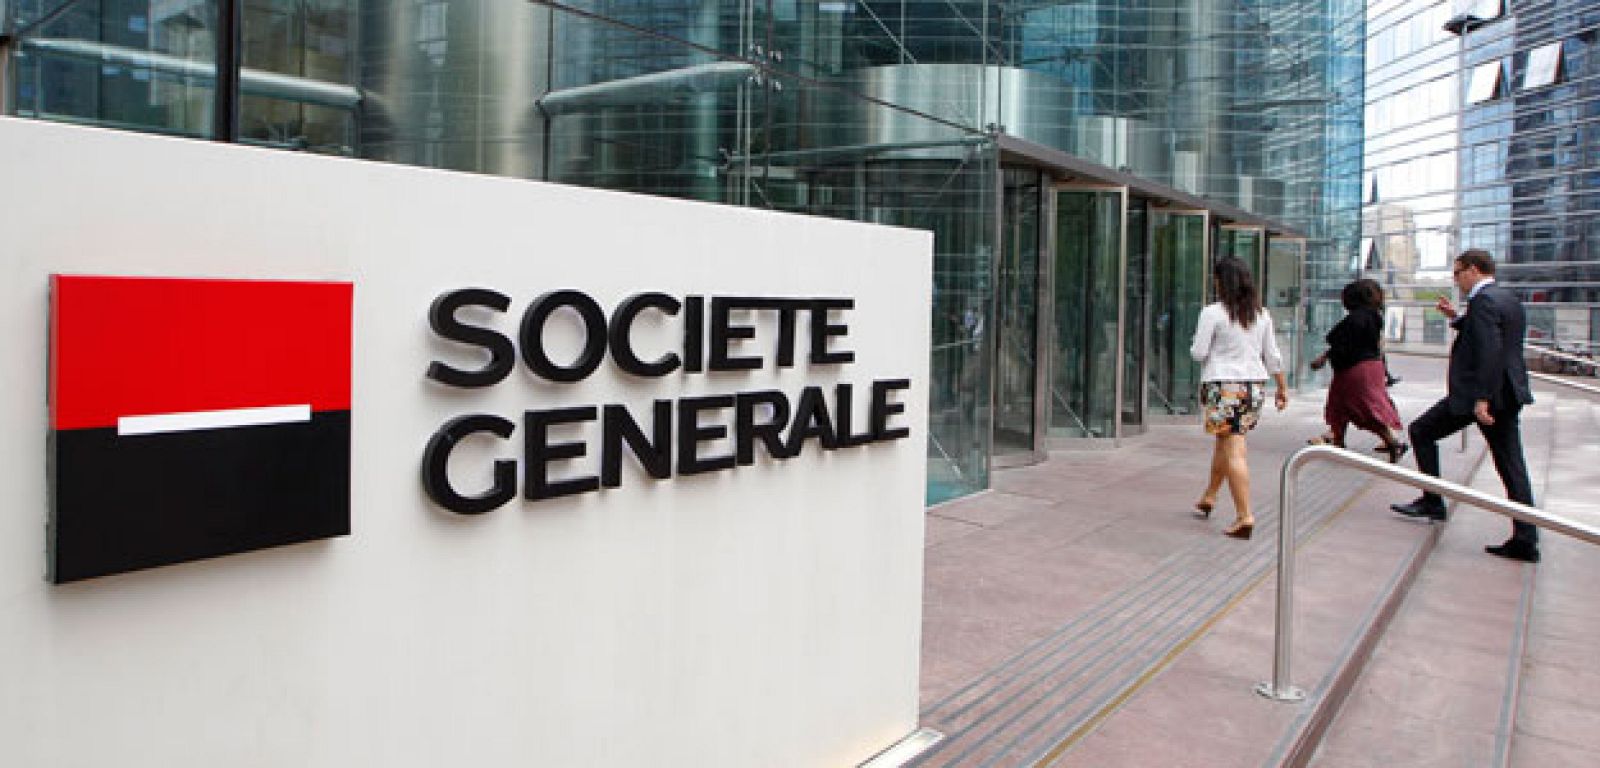 Sede de Société Générale, la segunda mayor entidad bancaria de Francia, en París